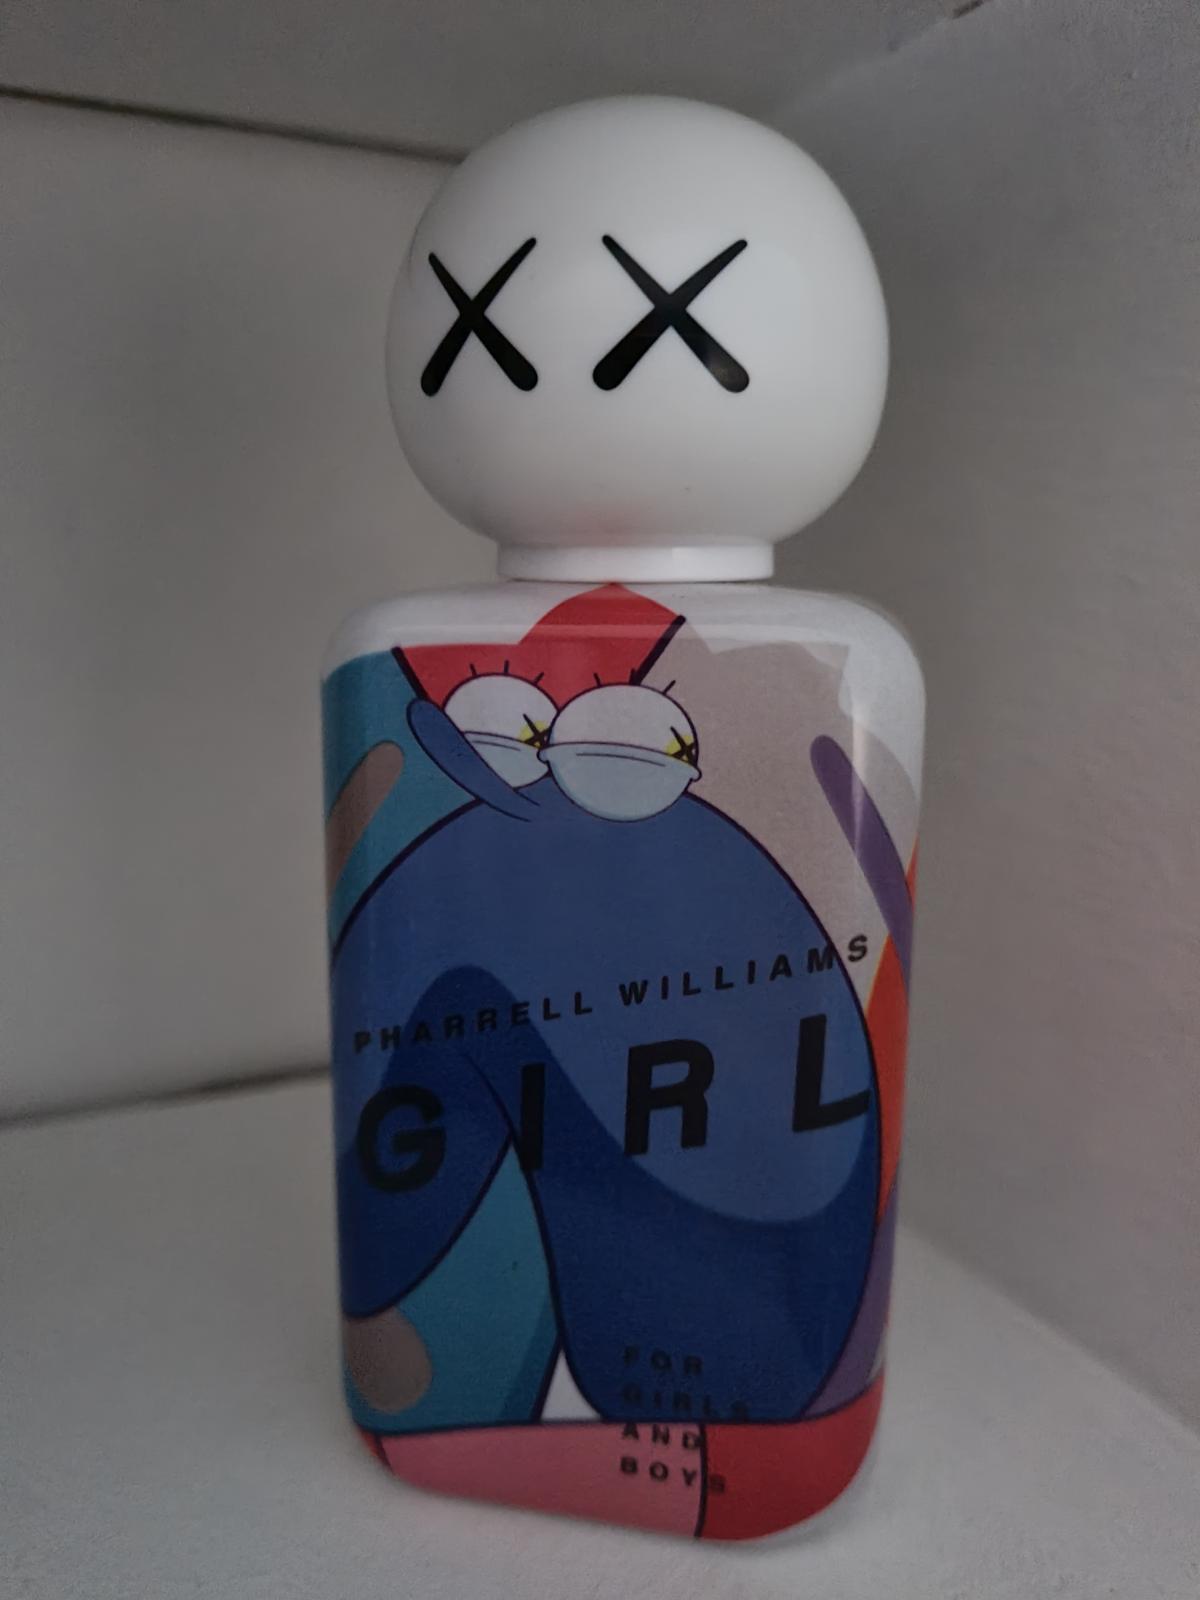 Girl Pharrell Williams perfume - a fragrance for women and men 2014